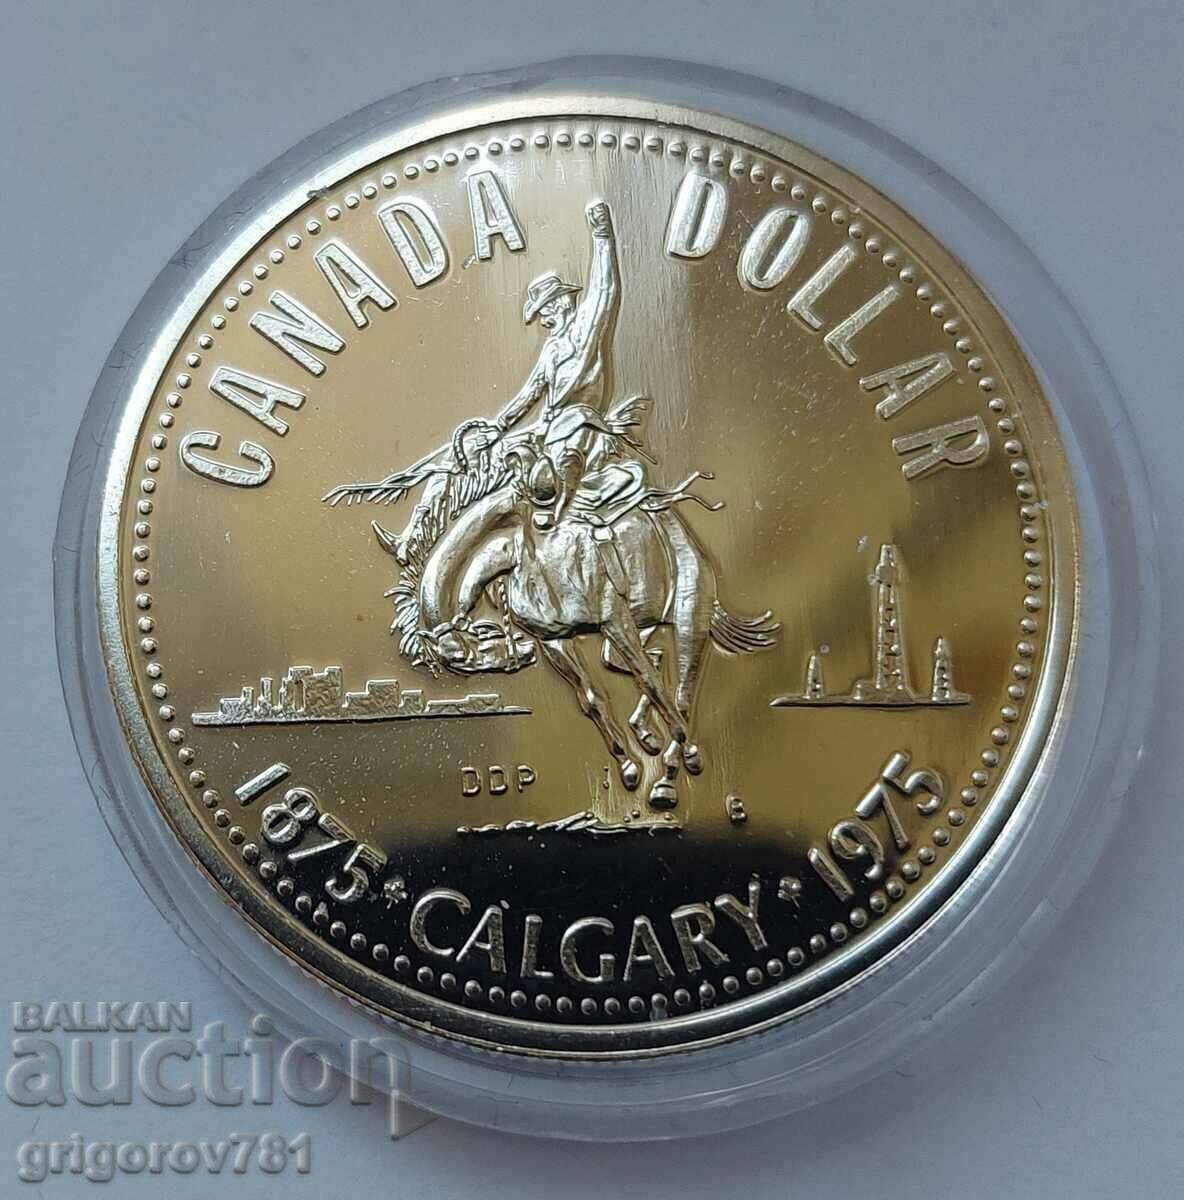 Ασημένιο 1 δολάριο Καναδάς 1975 - ασημένιο νόμισμα